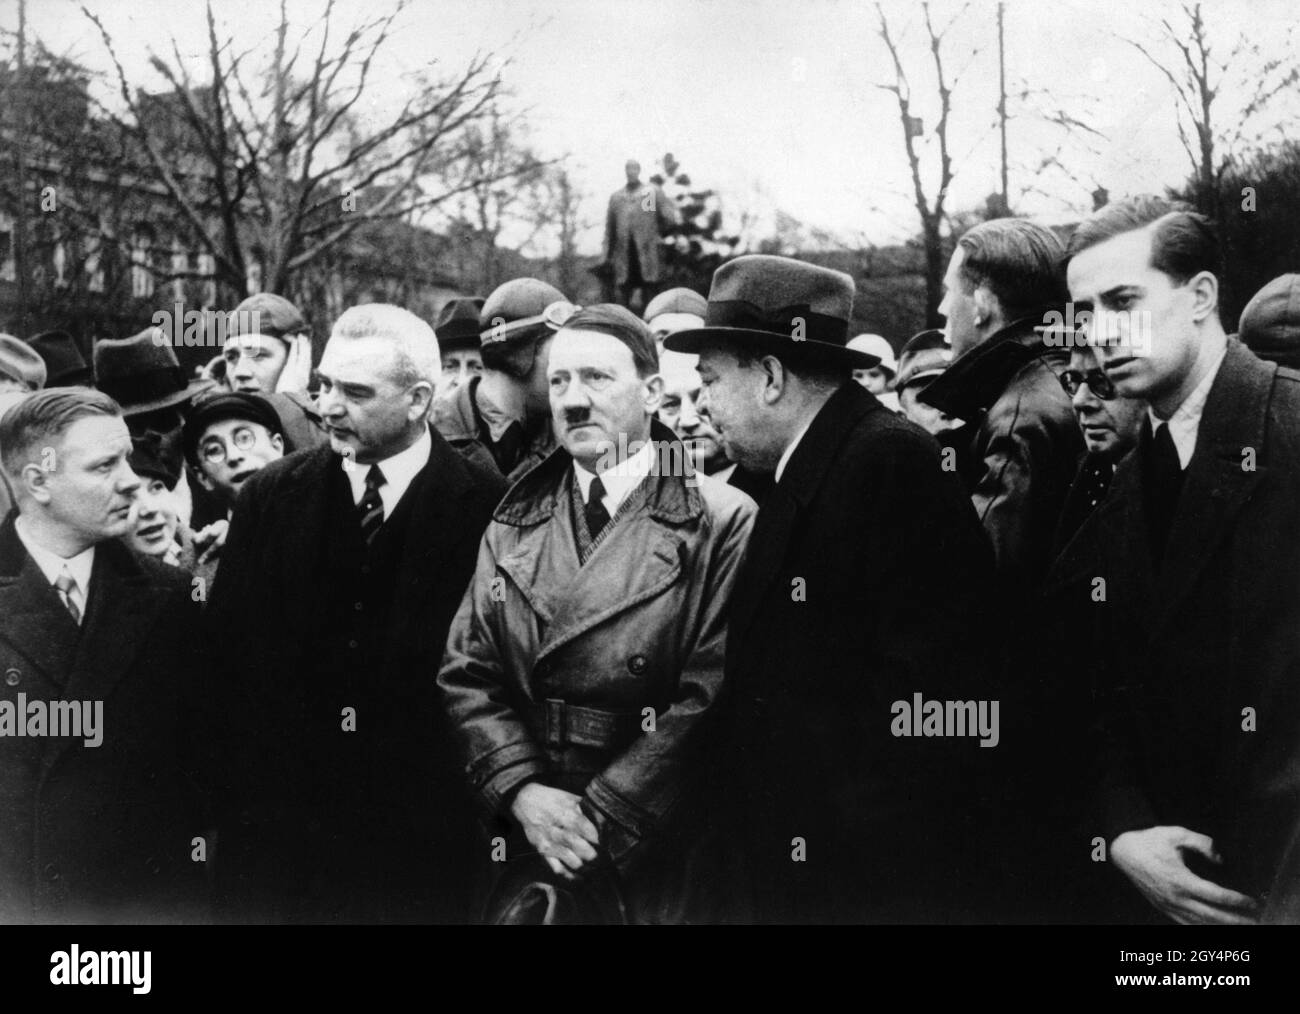 From left: Gauleiter Wagner, Vögeler (Vereinigte Stahlwerke), Hitler, Borbet (Bochumer Verein) and Hitler's personal physician Brandt. [automated translation] Stock Photo